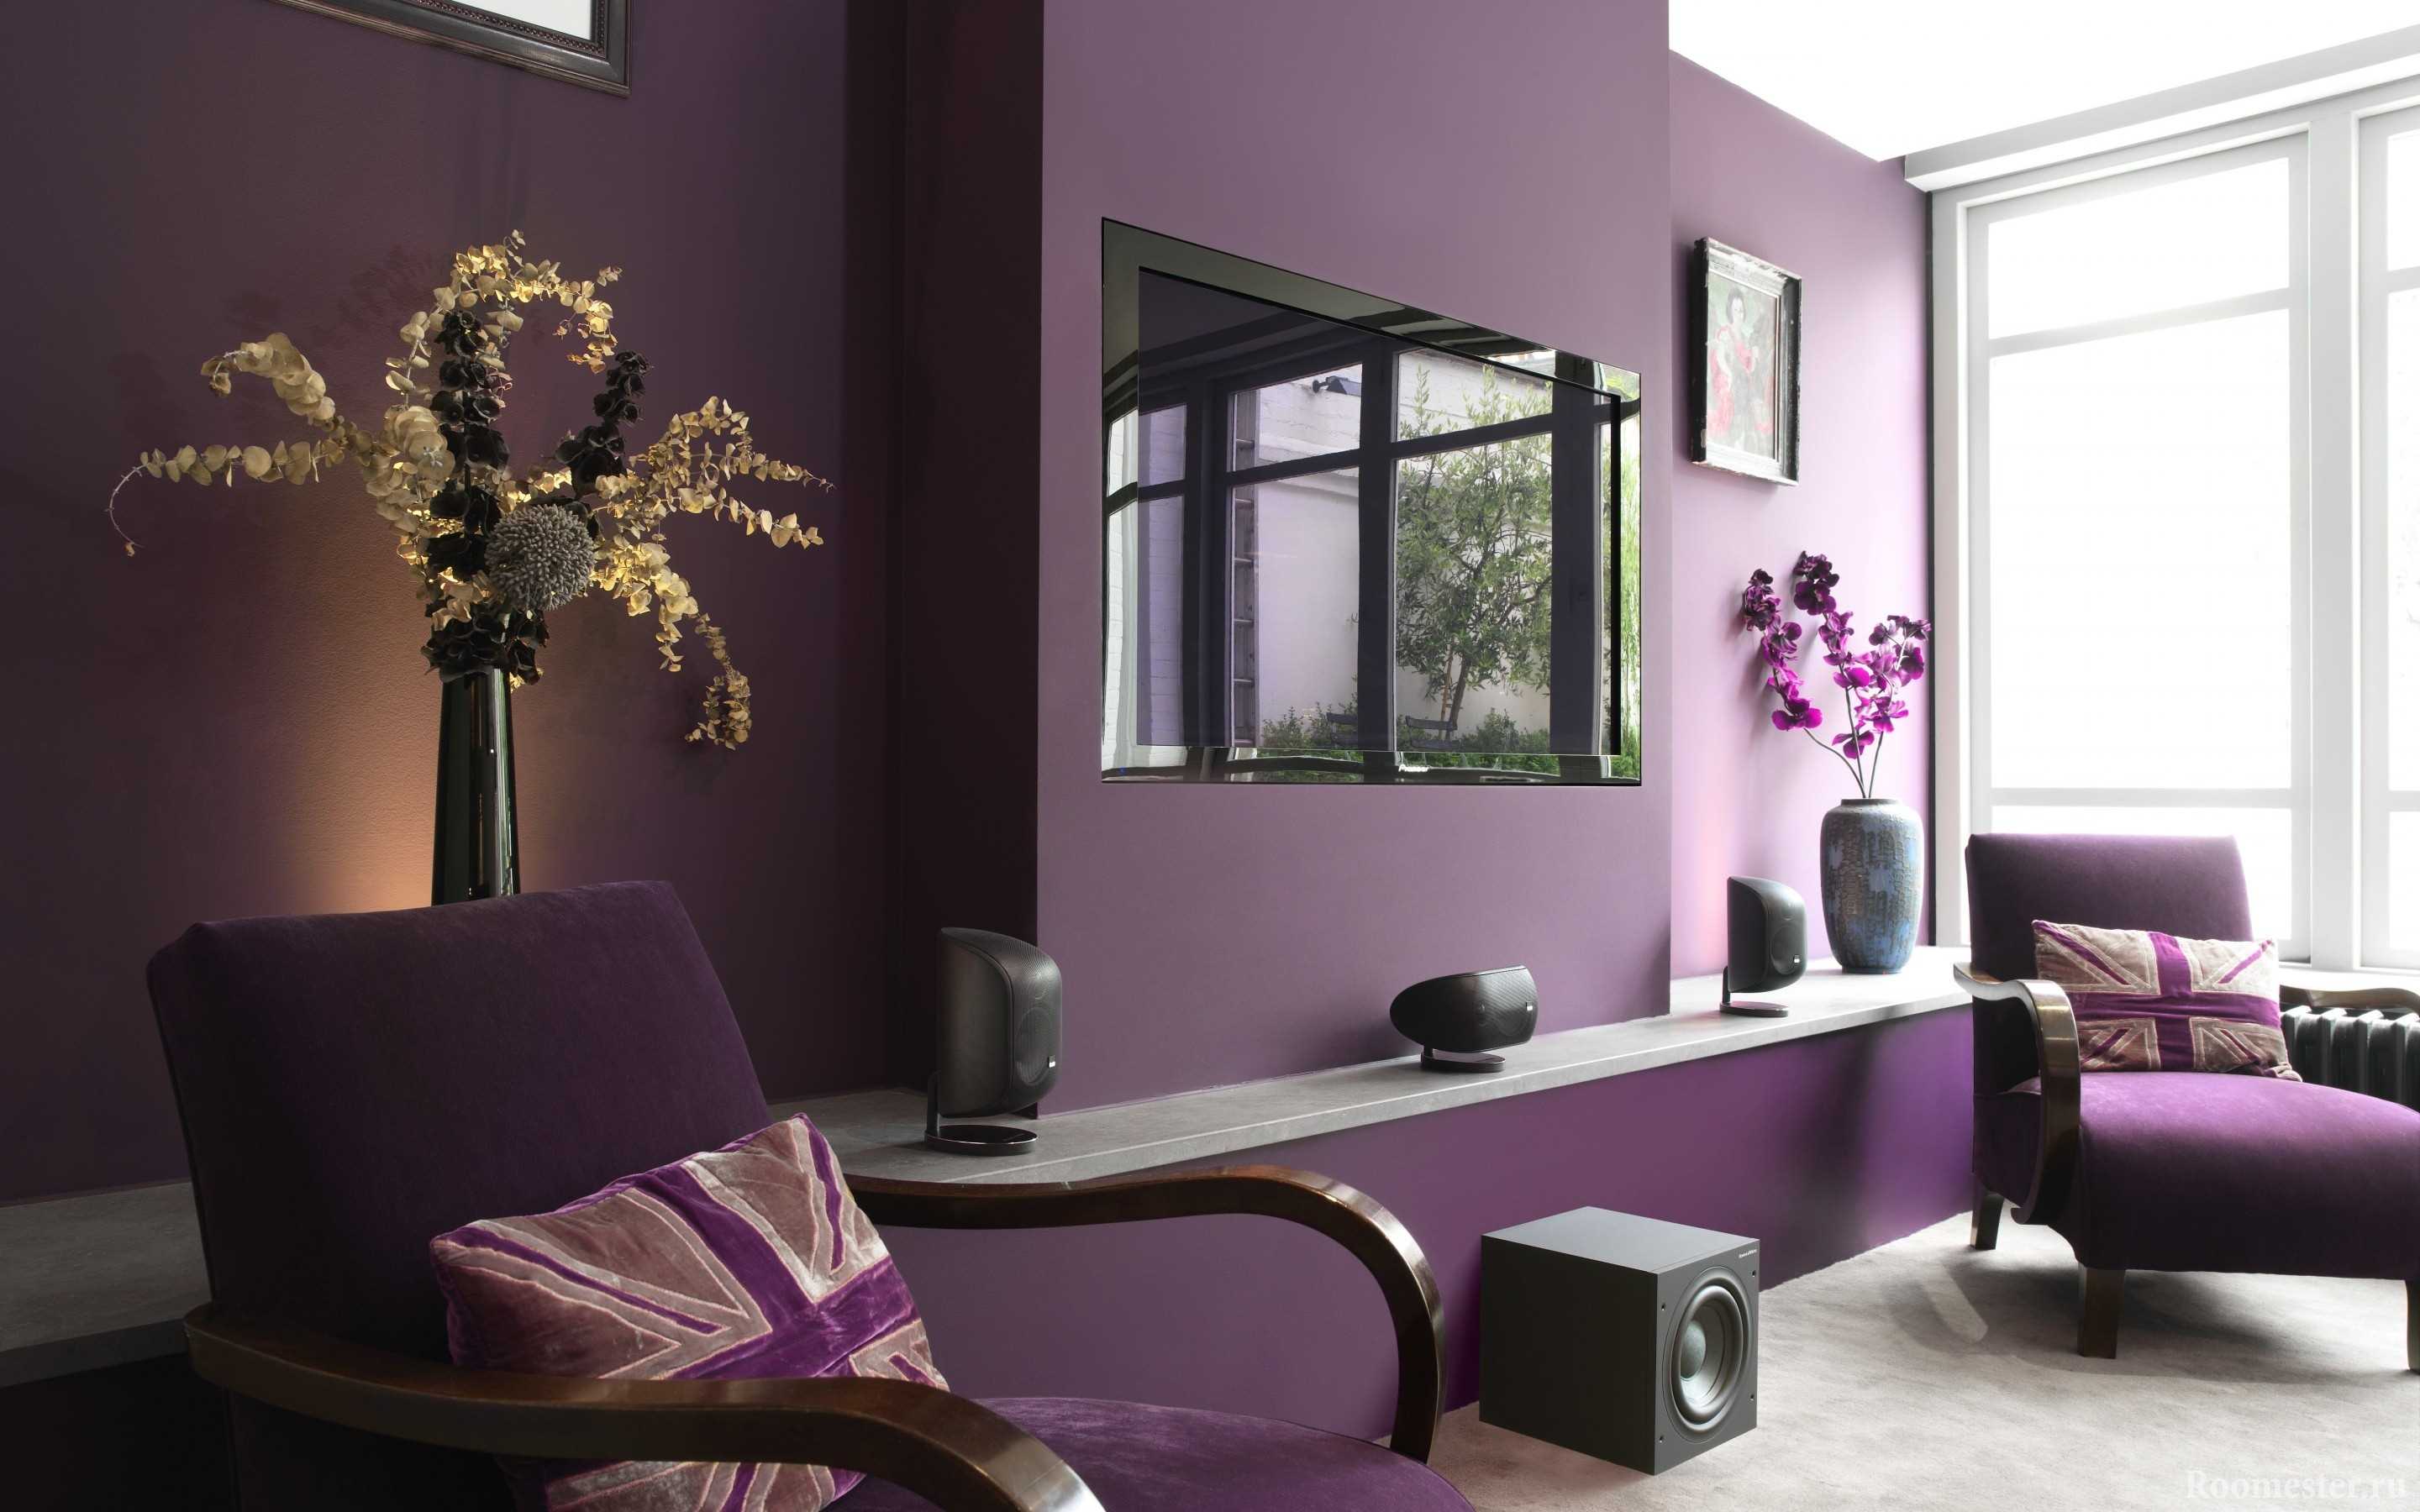 canapé violet clair dans le style du salon